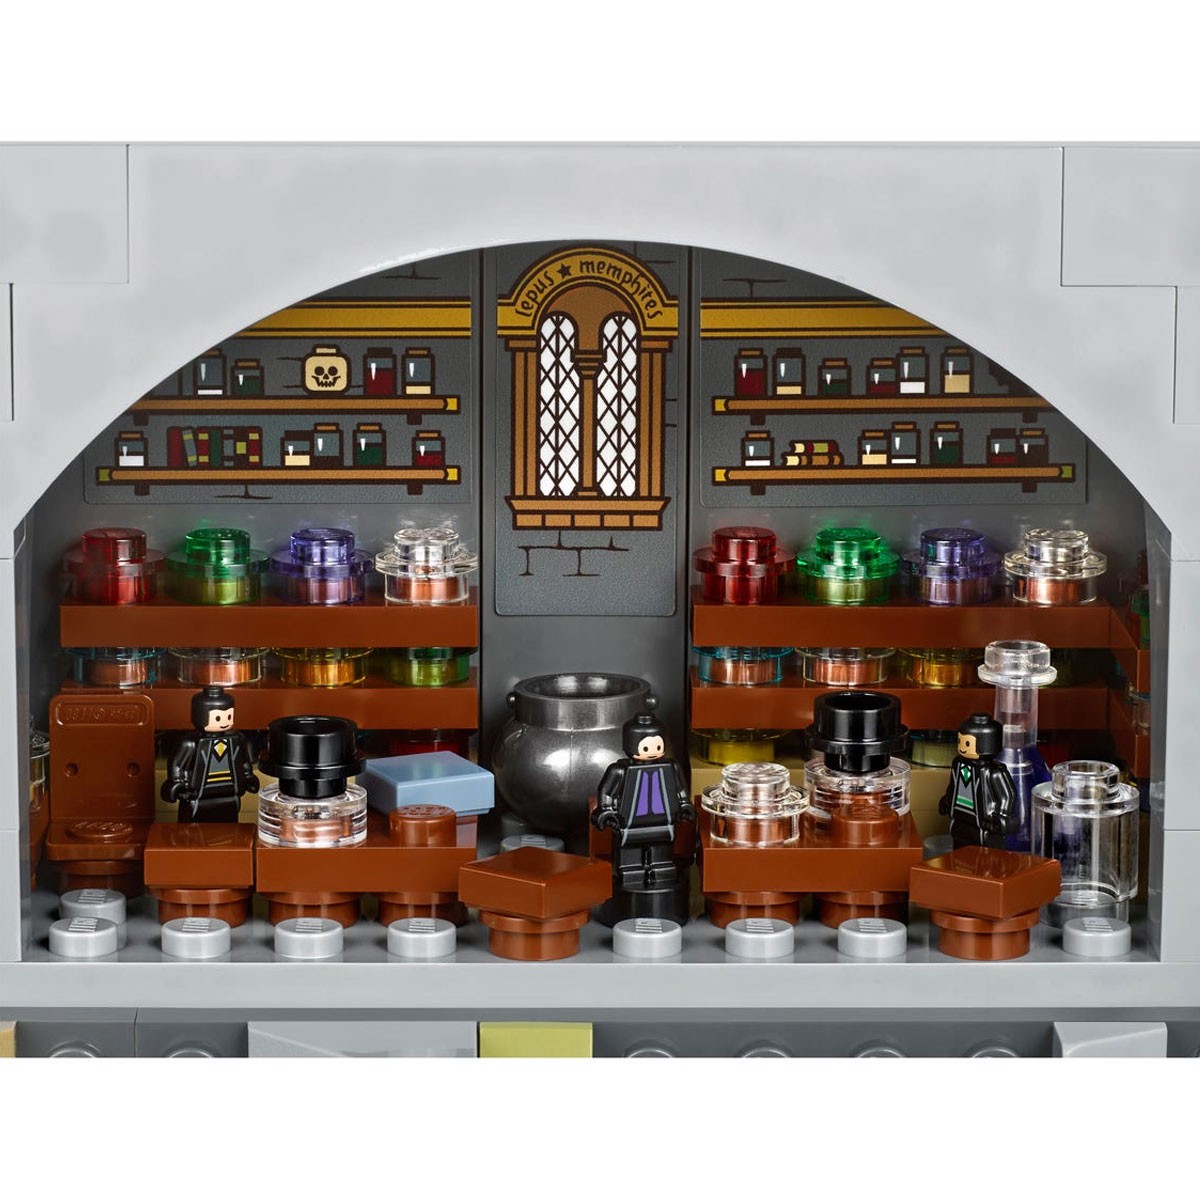 Comparando a microescala LEGO Harry Potter Hogwarts castelos